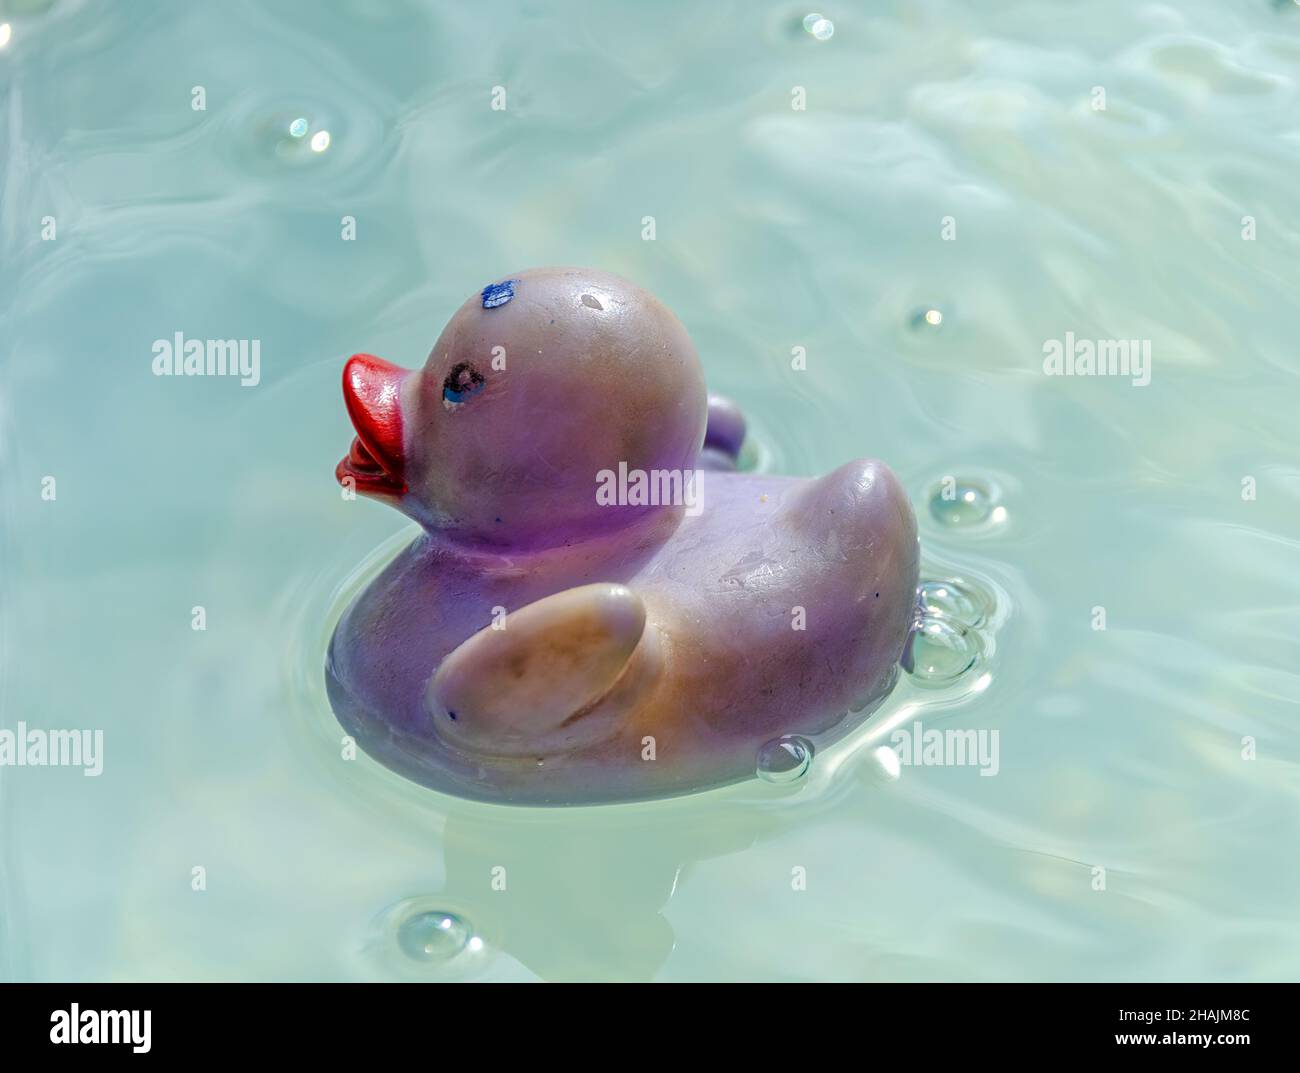 le canard en plastique aux couleurs décolorées tourbillonne dans l'eau de mer Banque D'Images